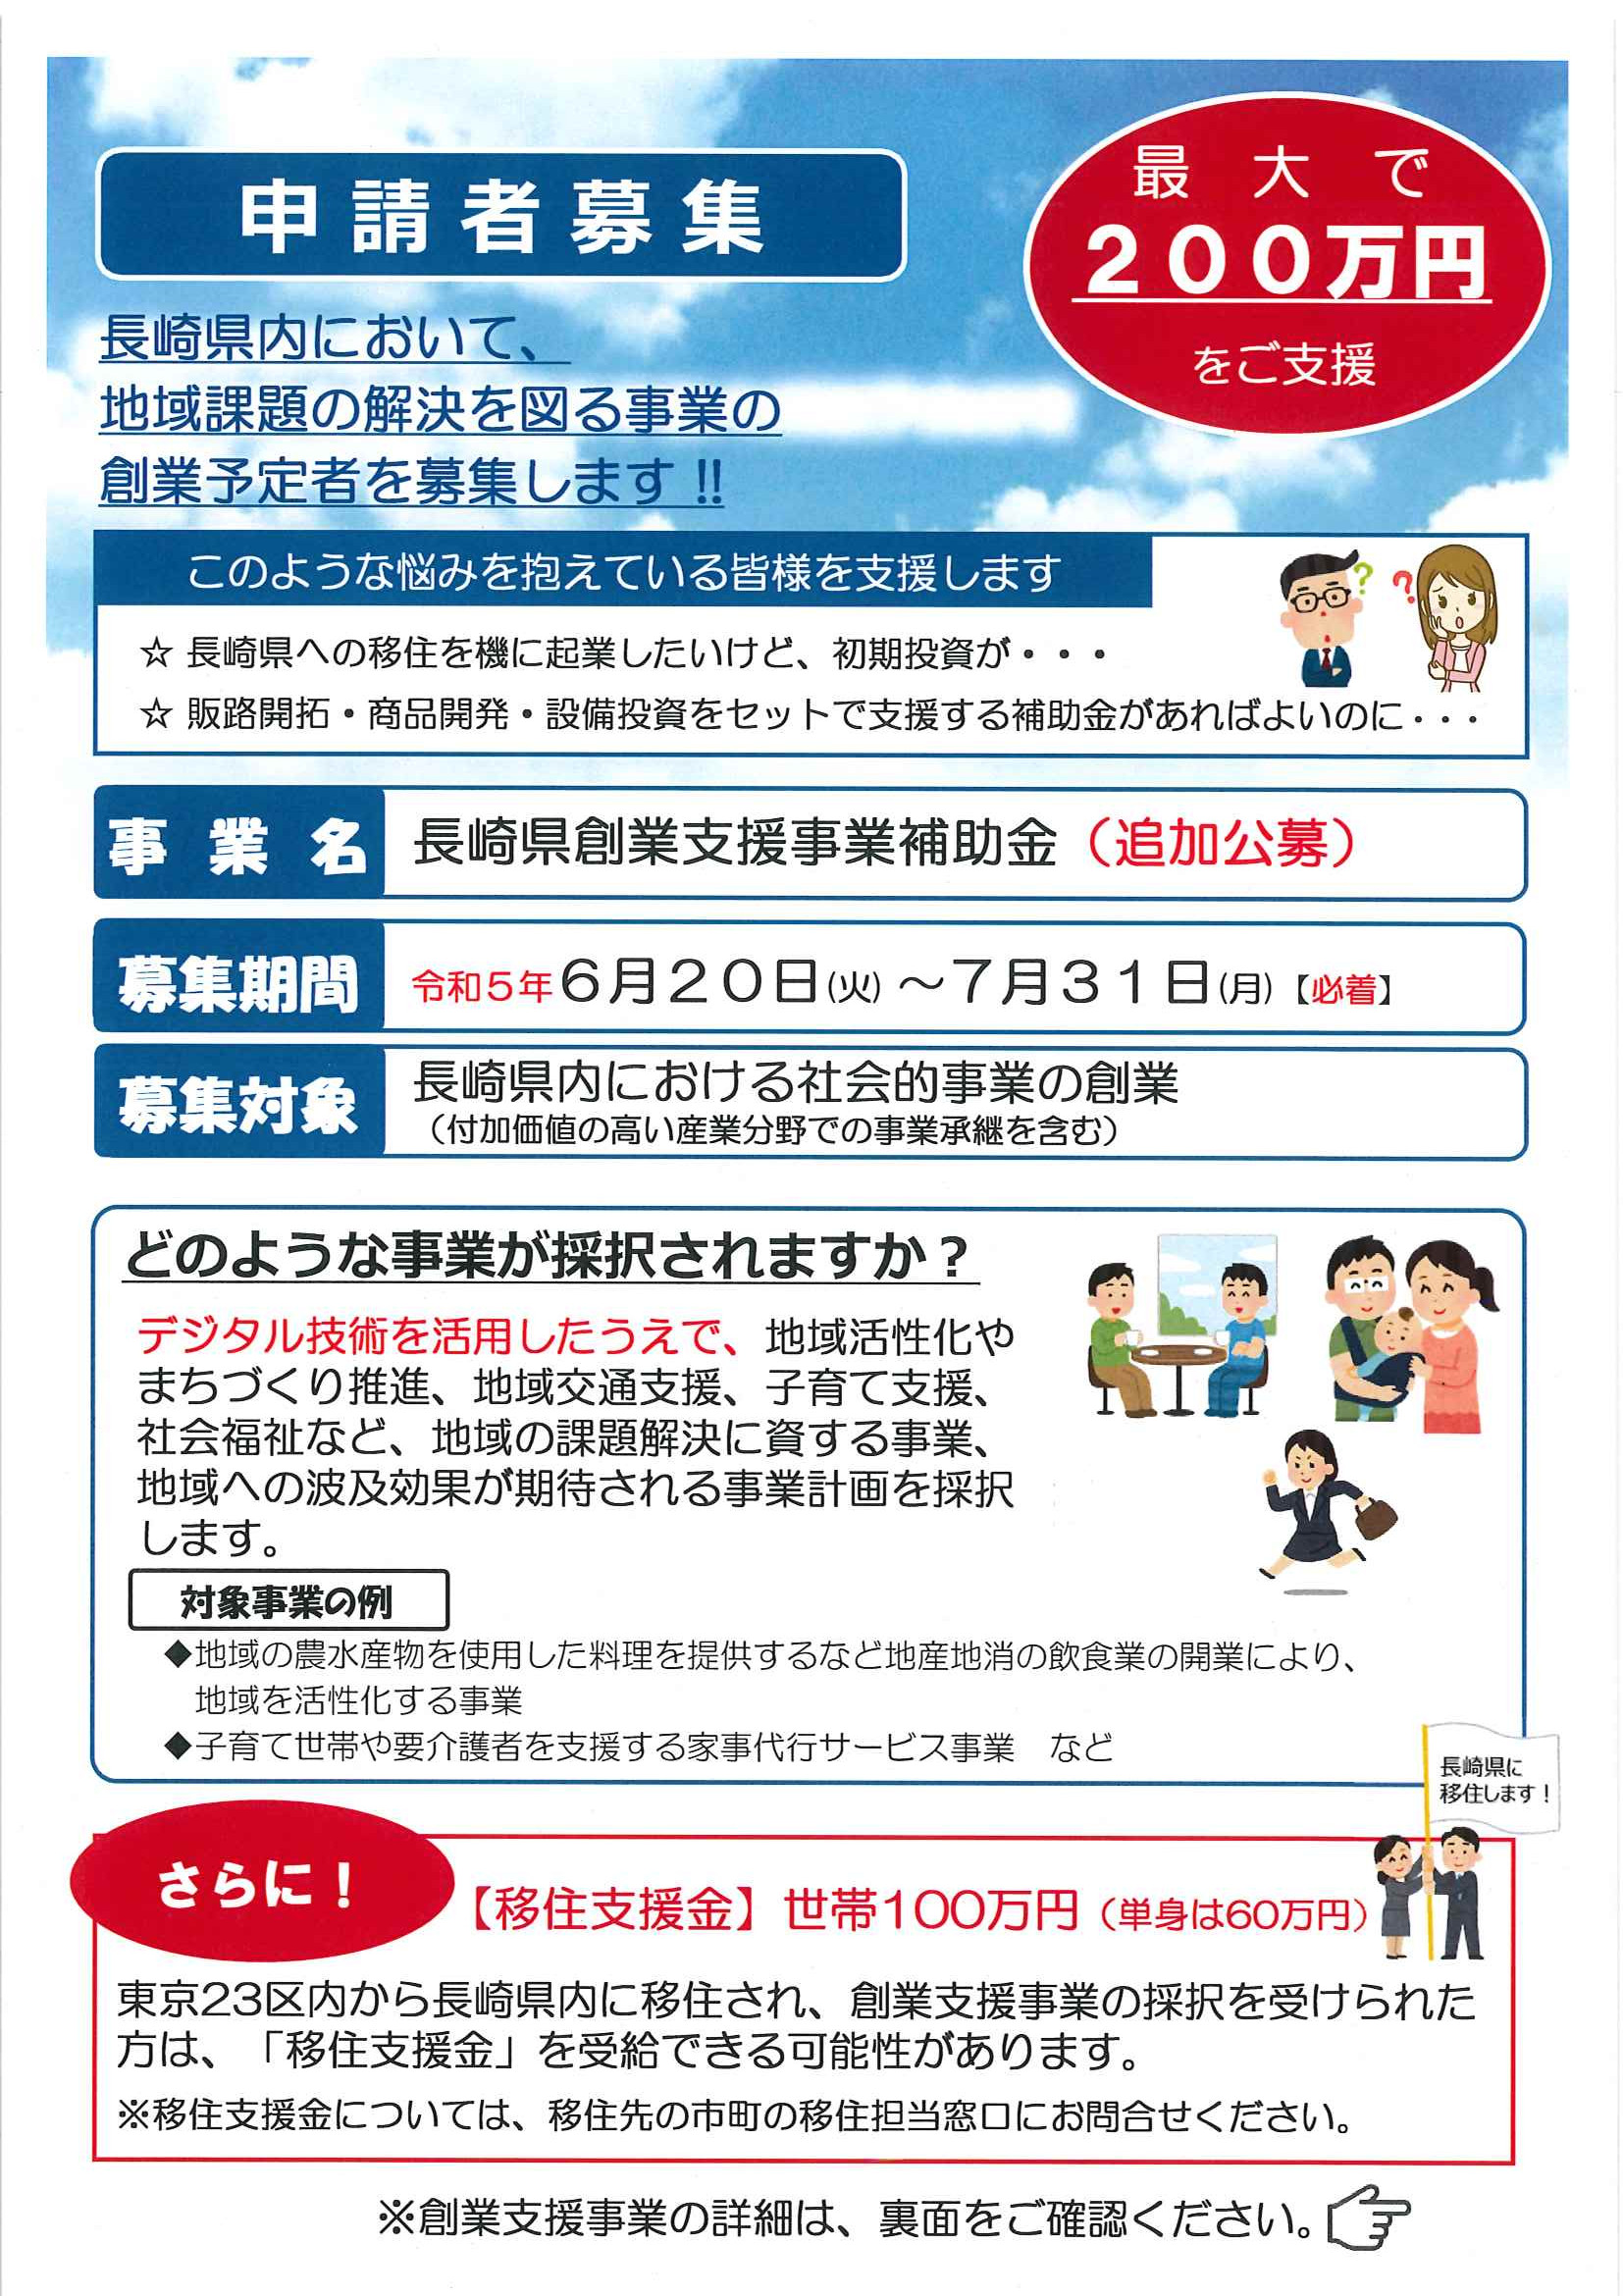 追加募集！長崎県創業支援事業補助金のお知らせ！